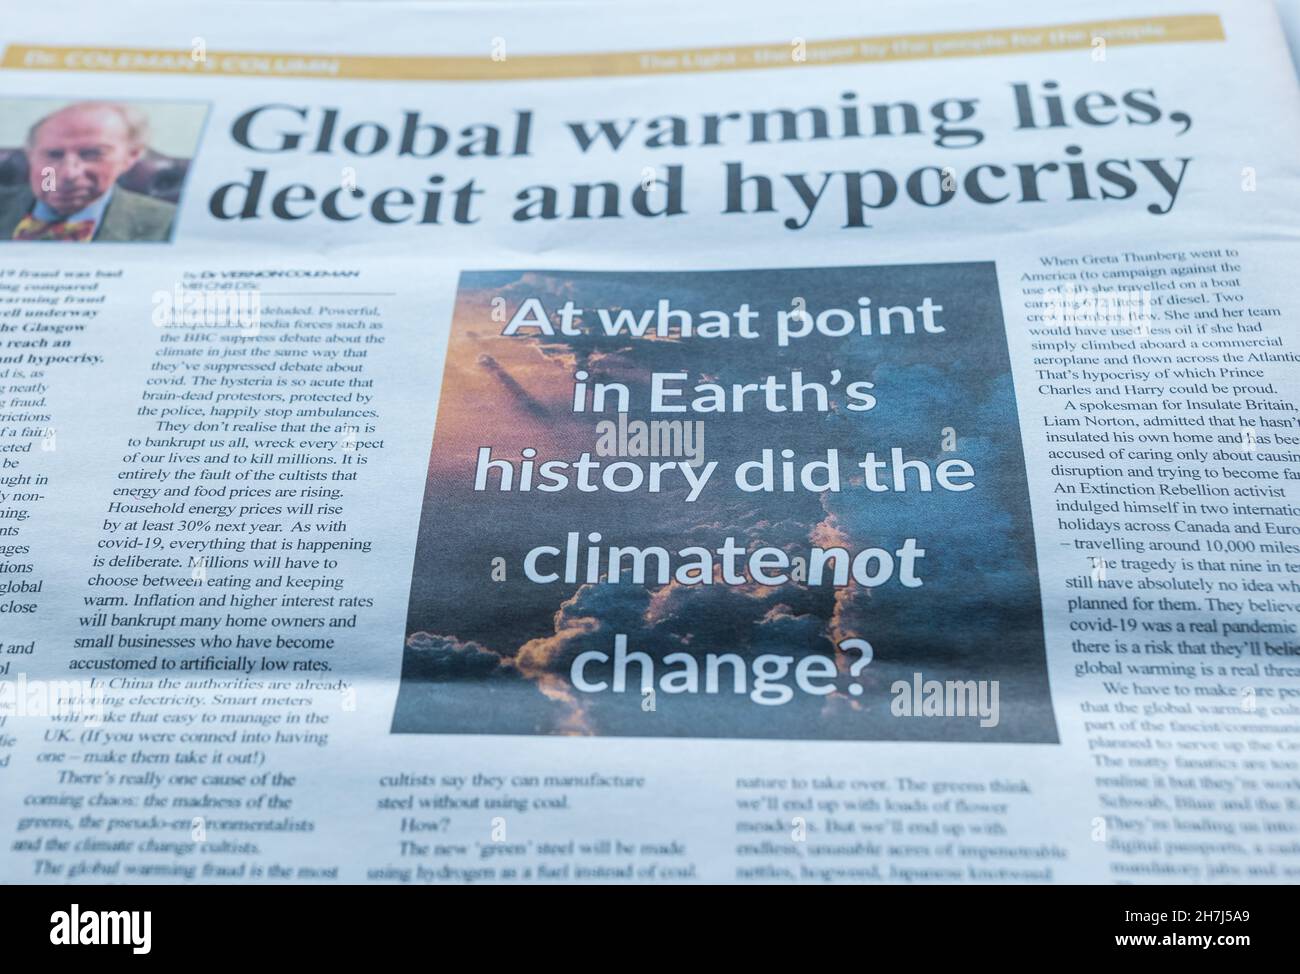 Dr Vernon Coleman article sur le changement climatique et le réchauffement climatique dans le journal The Light publié par Darren Smith, théorie de la conspiration Banque D'Images